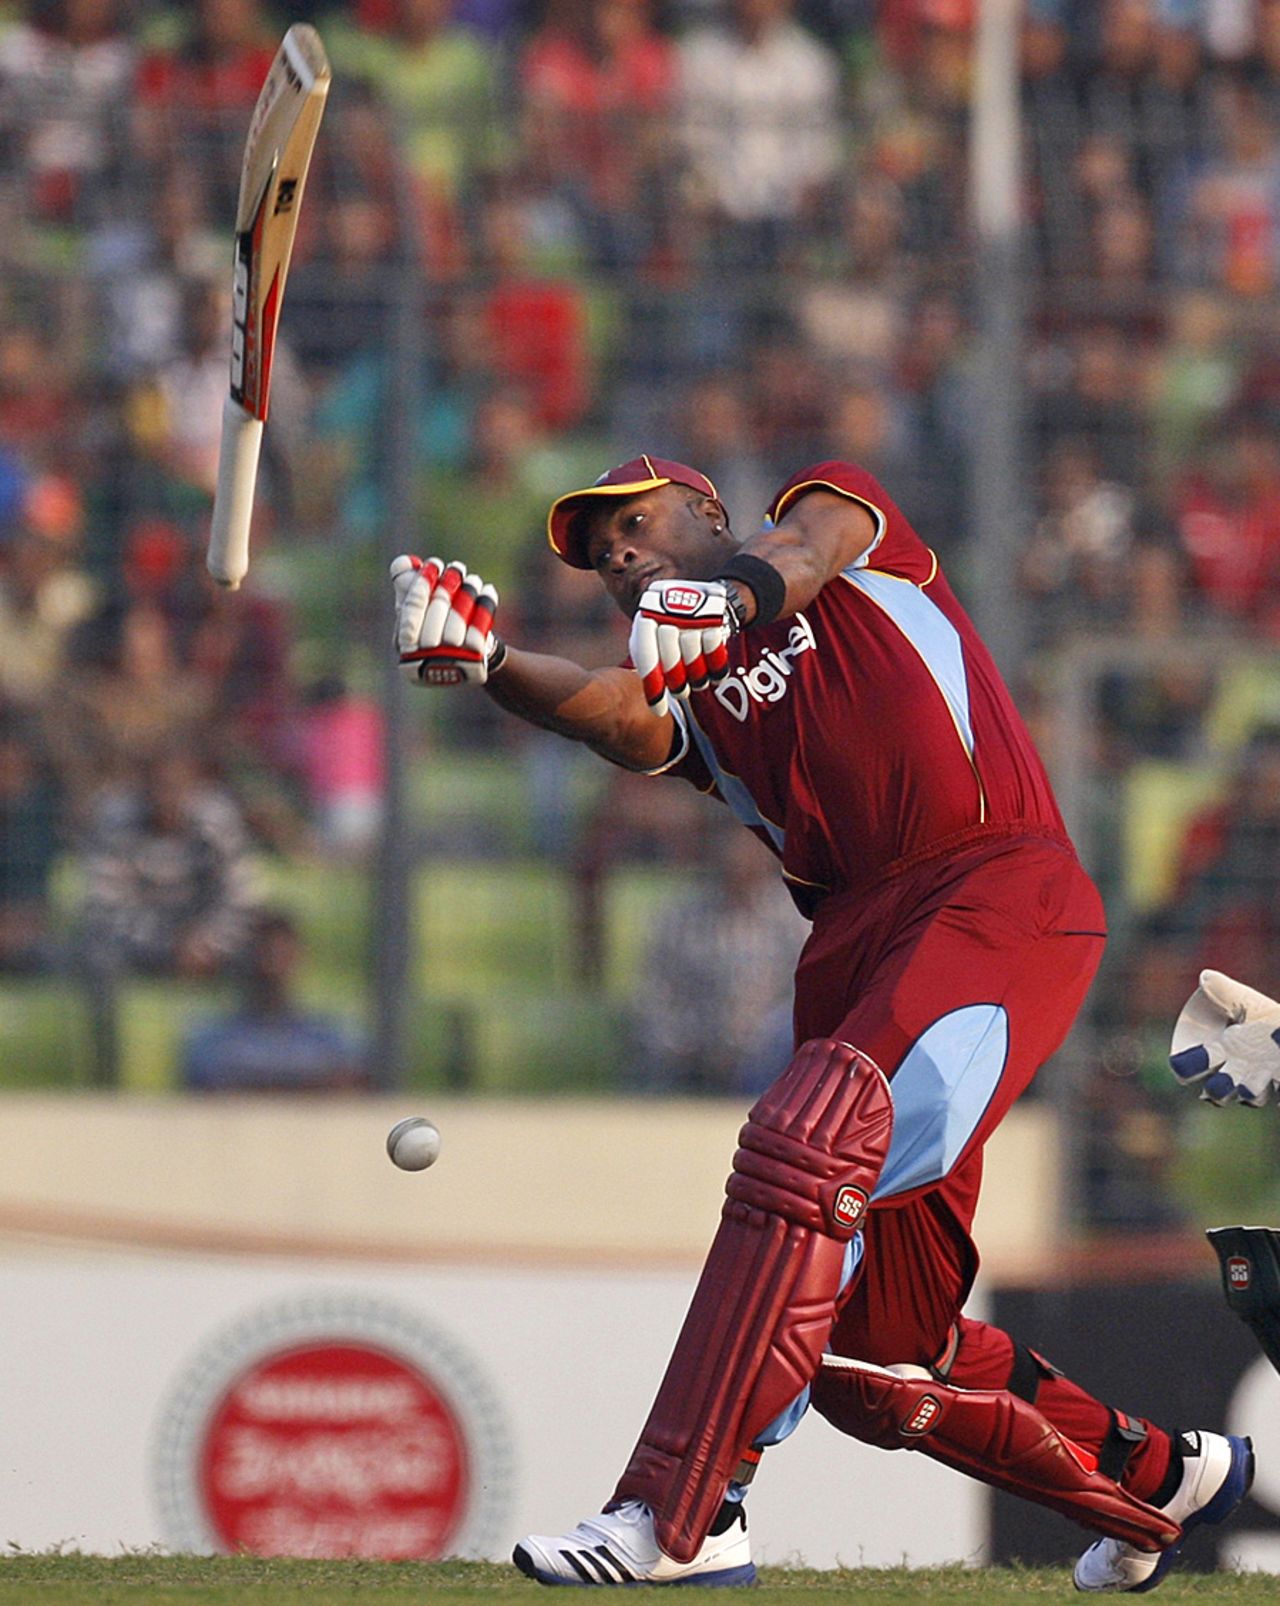 Kieron Pollard loses his bat as he swings his bat, Bangladesh v West Indies, 4th ODI, Mirpur, December 7, 2012